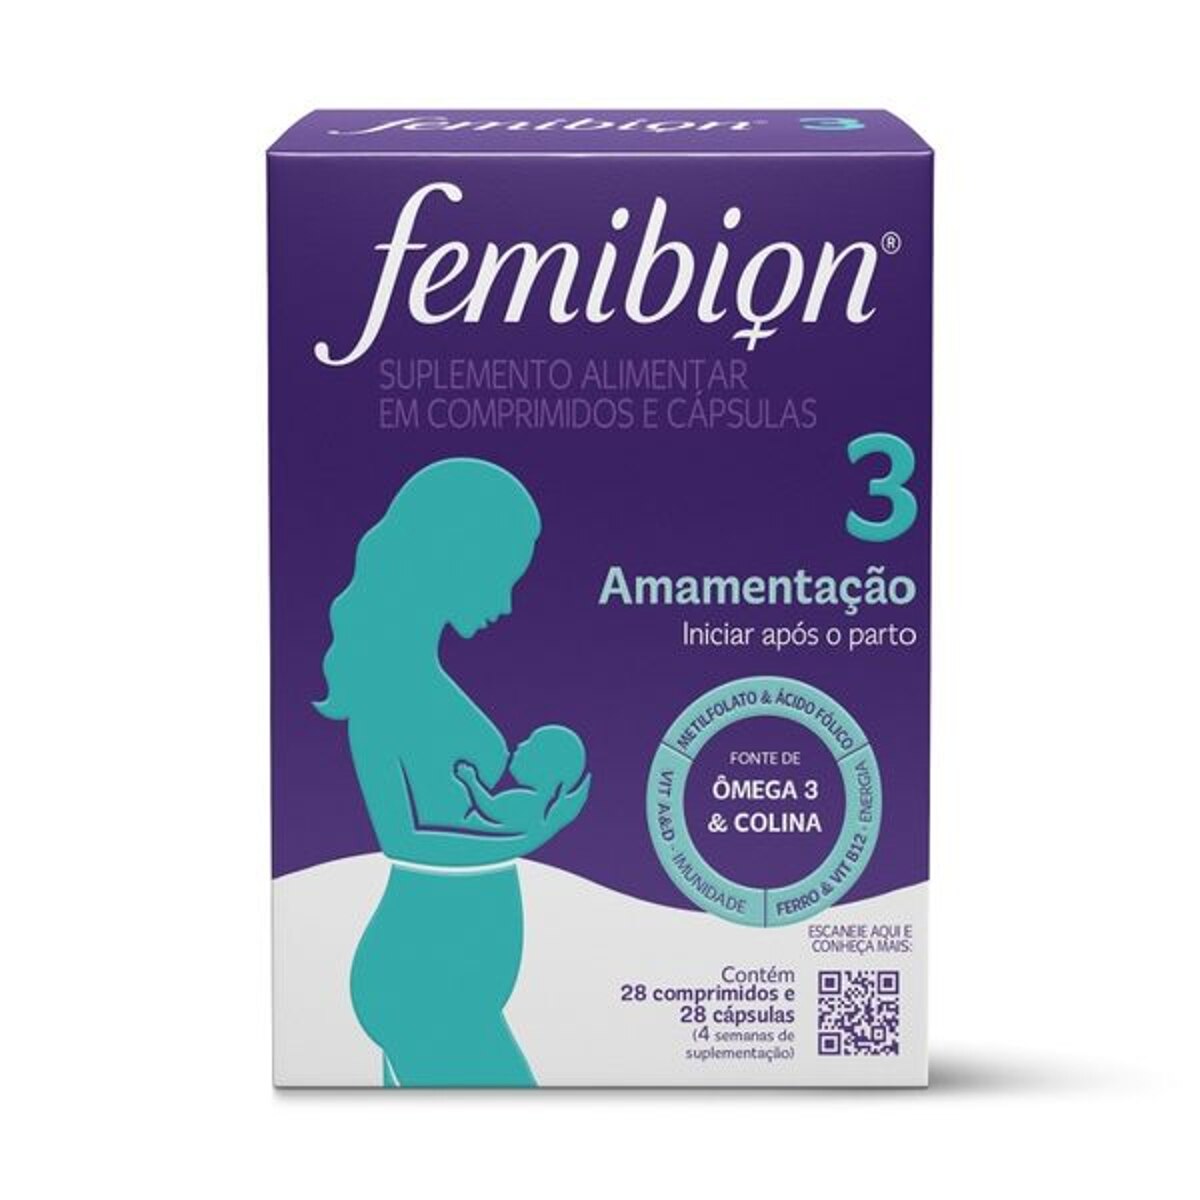 Femibion 3 Amamentacao 28 Comprimidos + 28 Capsulas